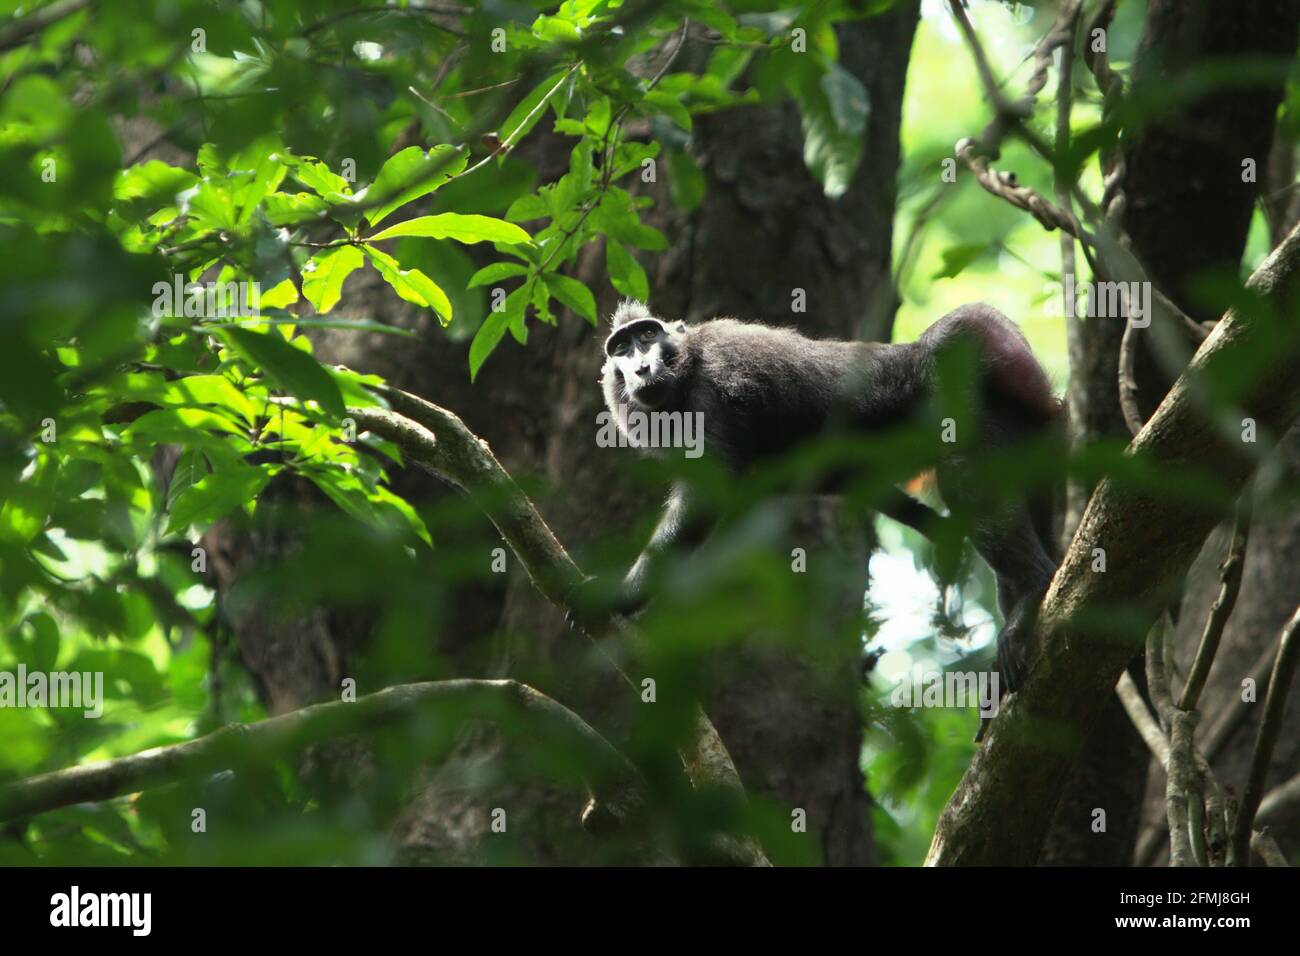 Macaco crested vagare su un ramo dell'albero nella foresta di Tangkoko, Sulawesi del nord, Indonesia. Secondo gli scienziati primati, la scimmia endemica di Sulawesi trascorre più del 60% del loro giorno a terra piuttosto che sugli alberi. Foto Stock